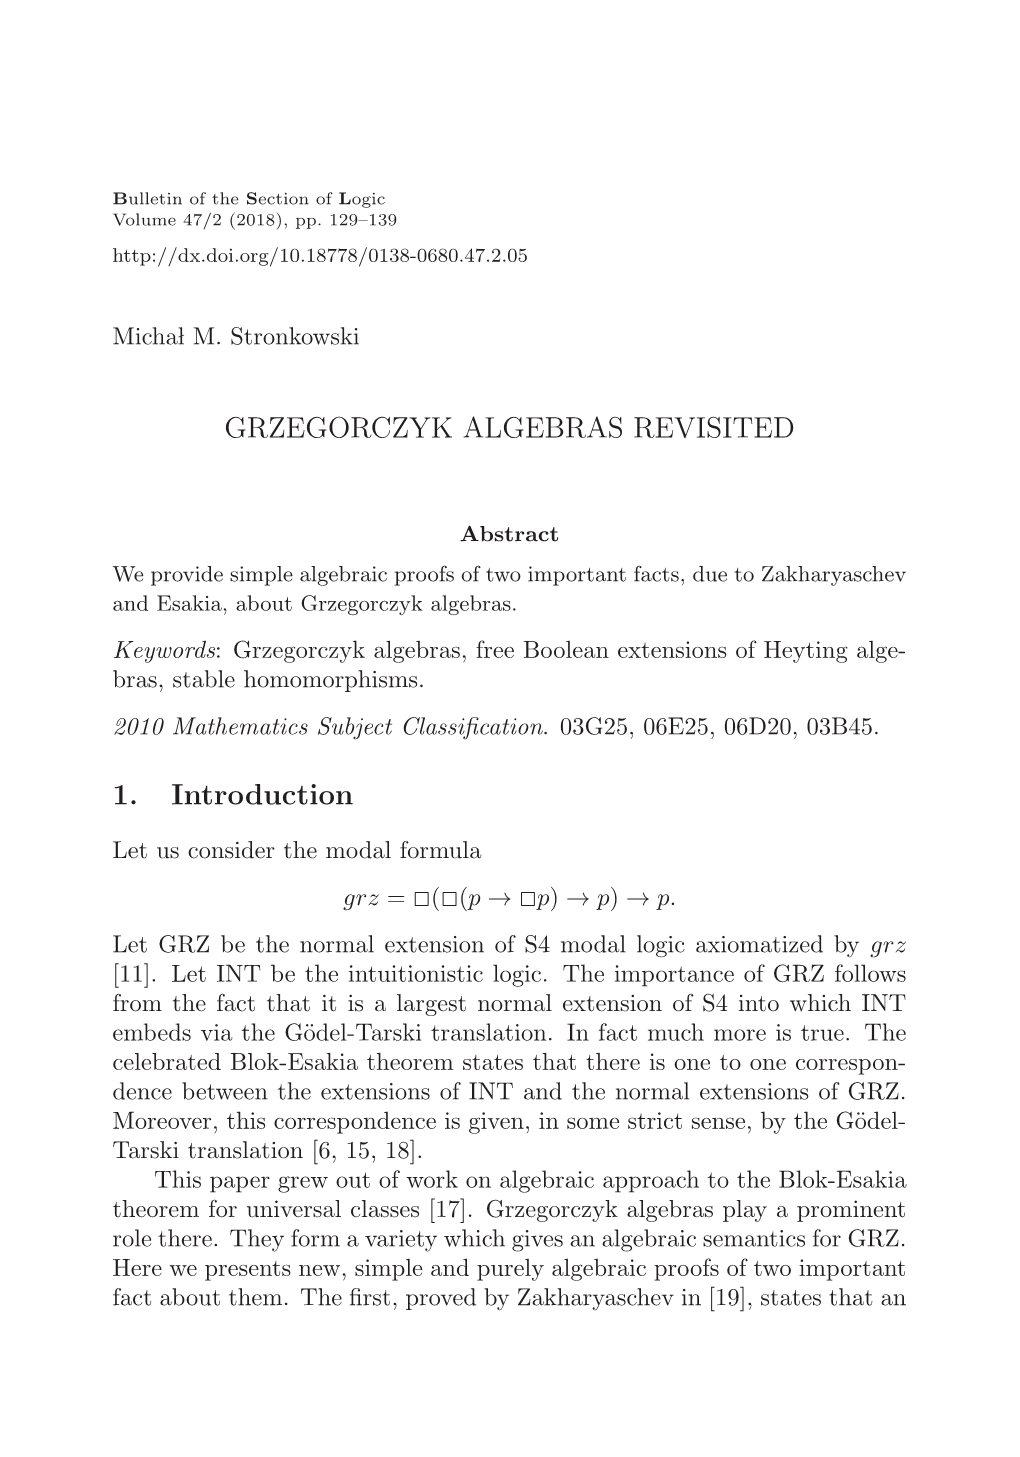 GRZEGORCZYK ALGEBRAS REVISITED 1. Introduction